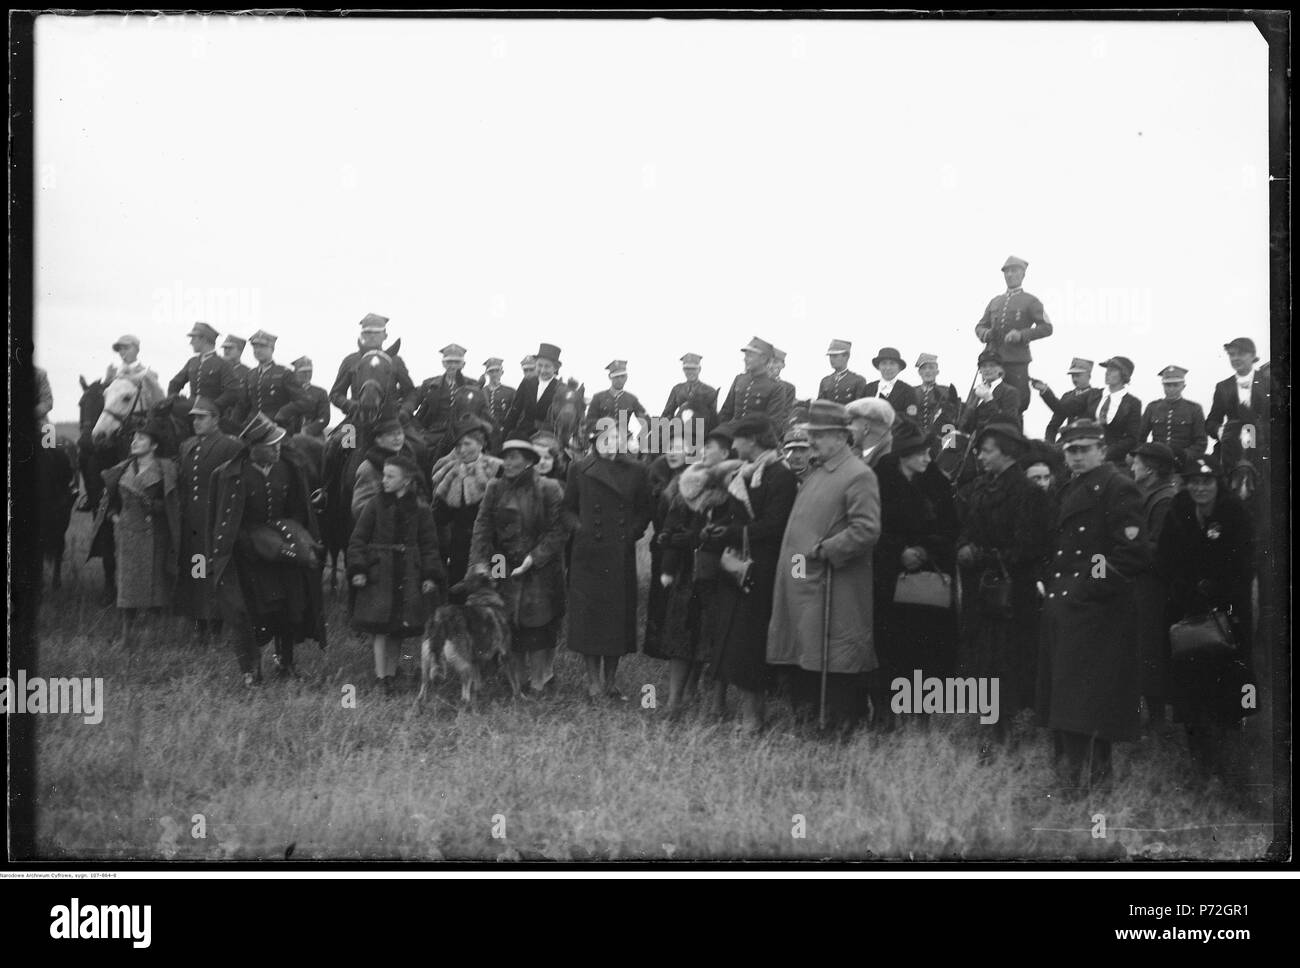 57 Narcyz Witczak-Witaczyński - Bieg oficerski św. Huberta z udziałem oficerów 1 Pułku Strzelców Konnych (107-864-8) Stock Photo